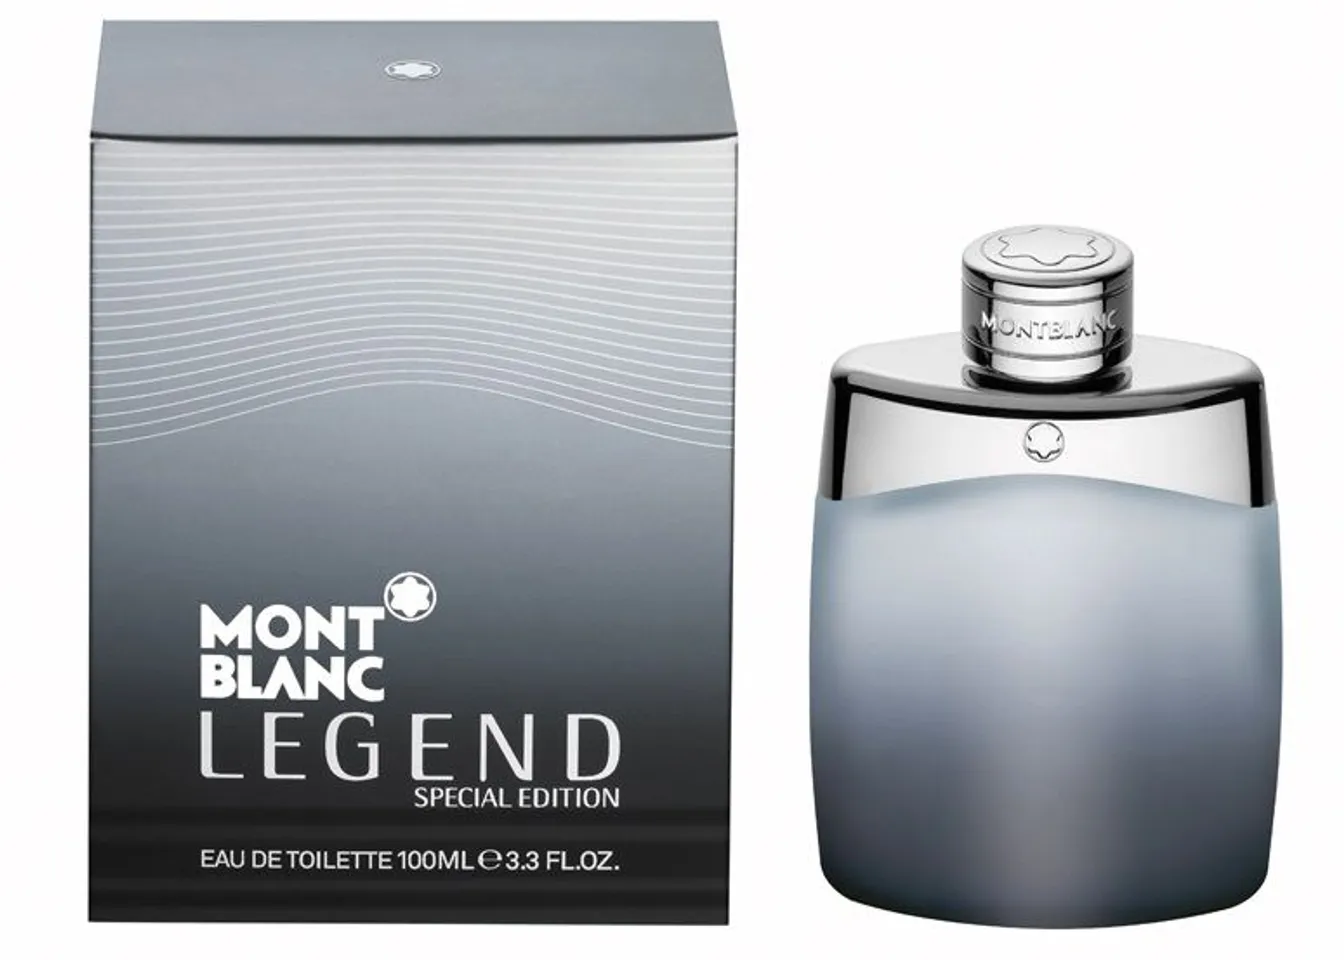 Nước hoa Mont blanc legend special edition 2013 mang mùi hương ấn tượng theo phong cách lạnh lùng, nam tính